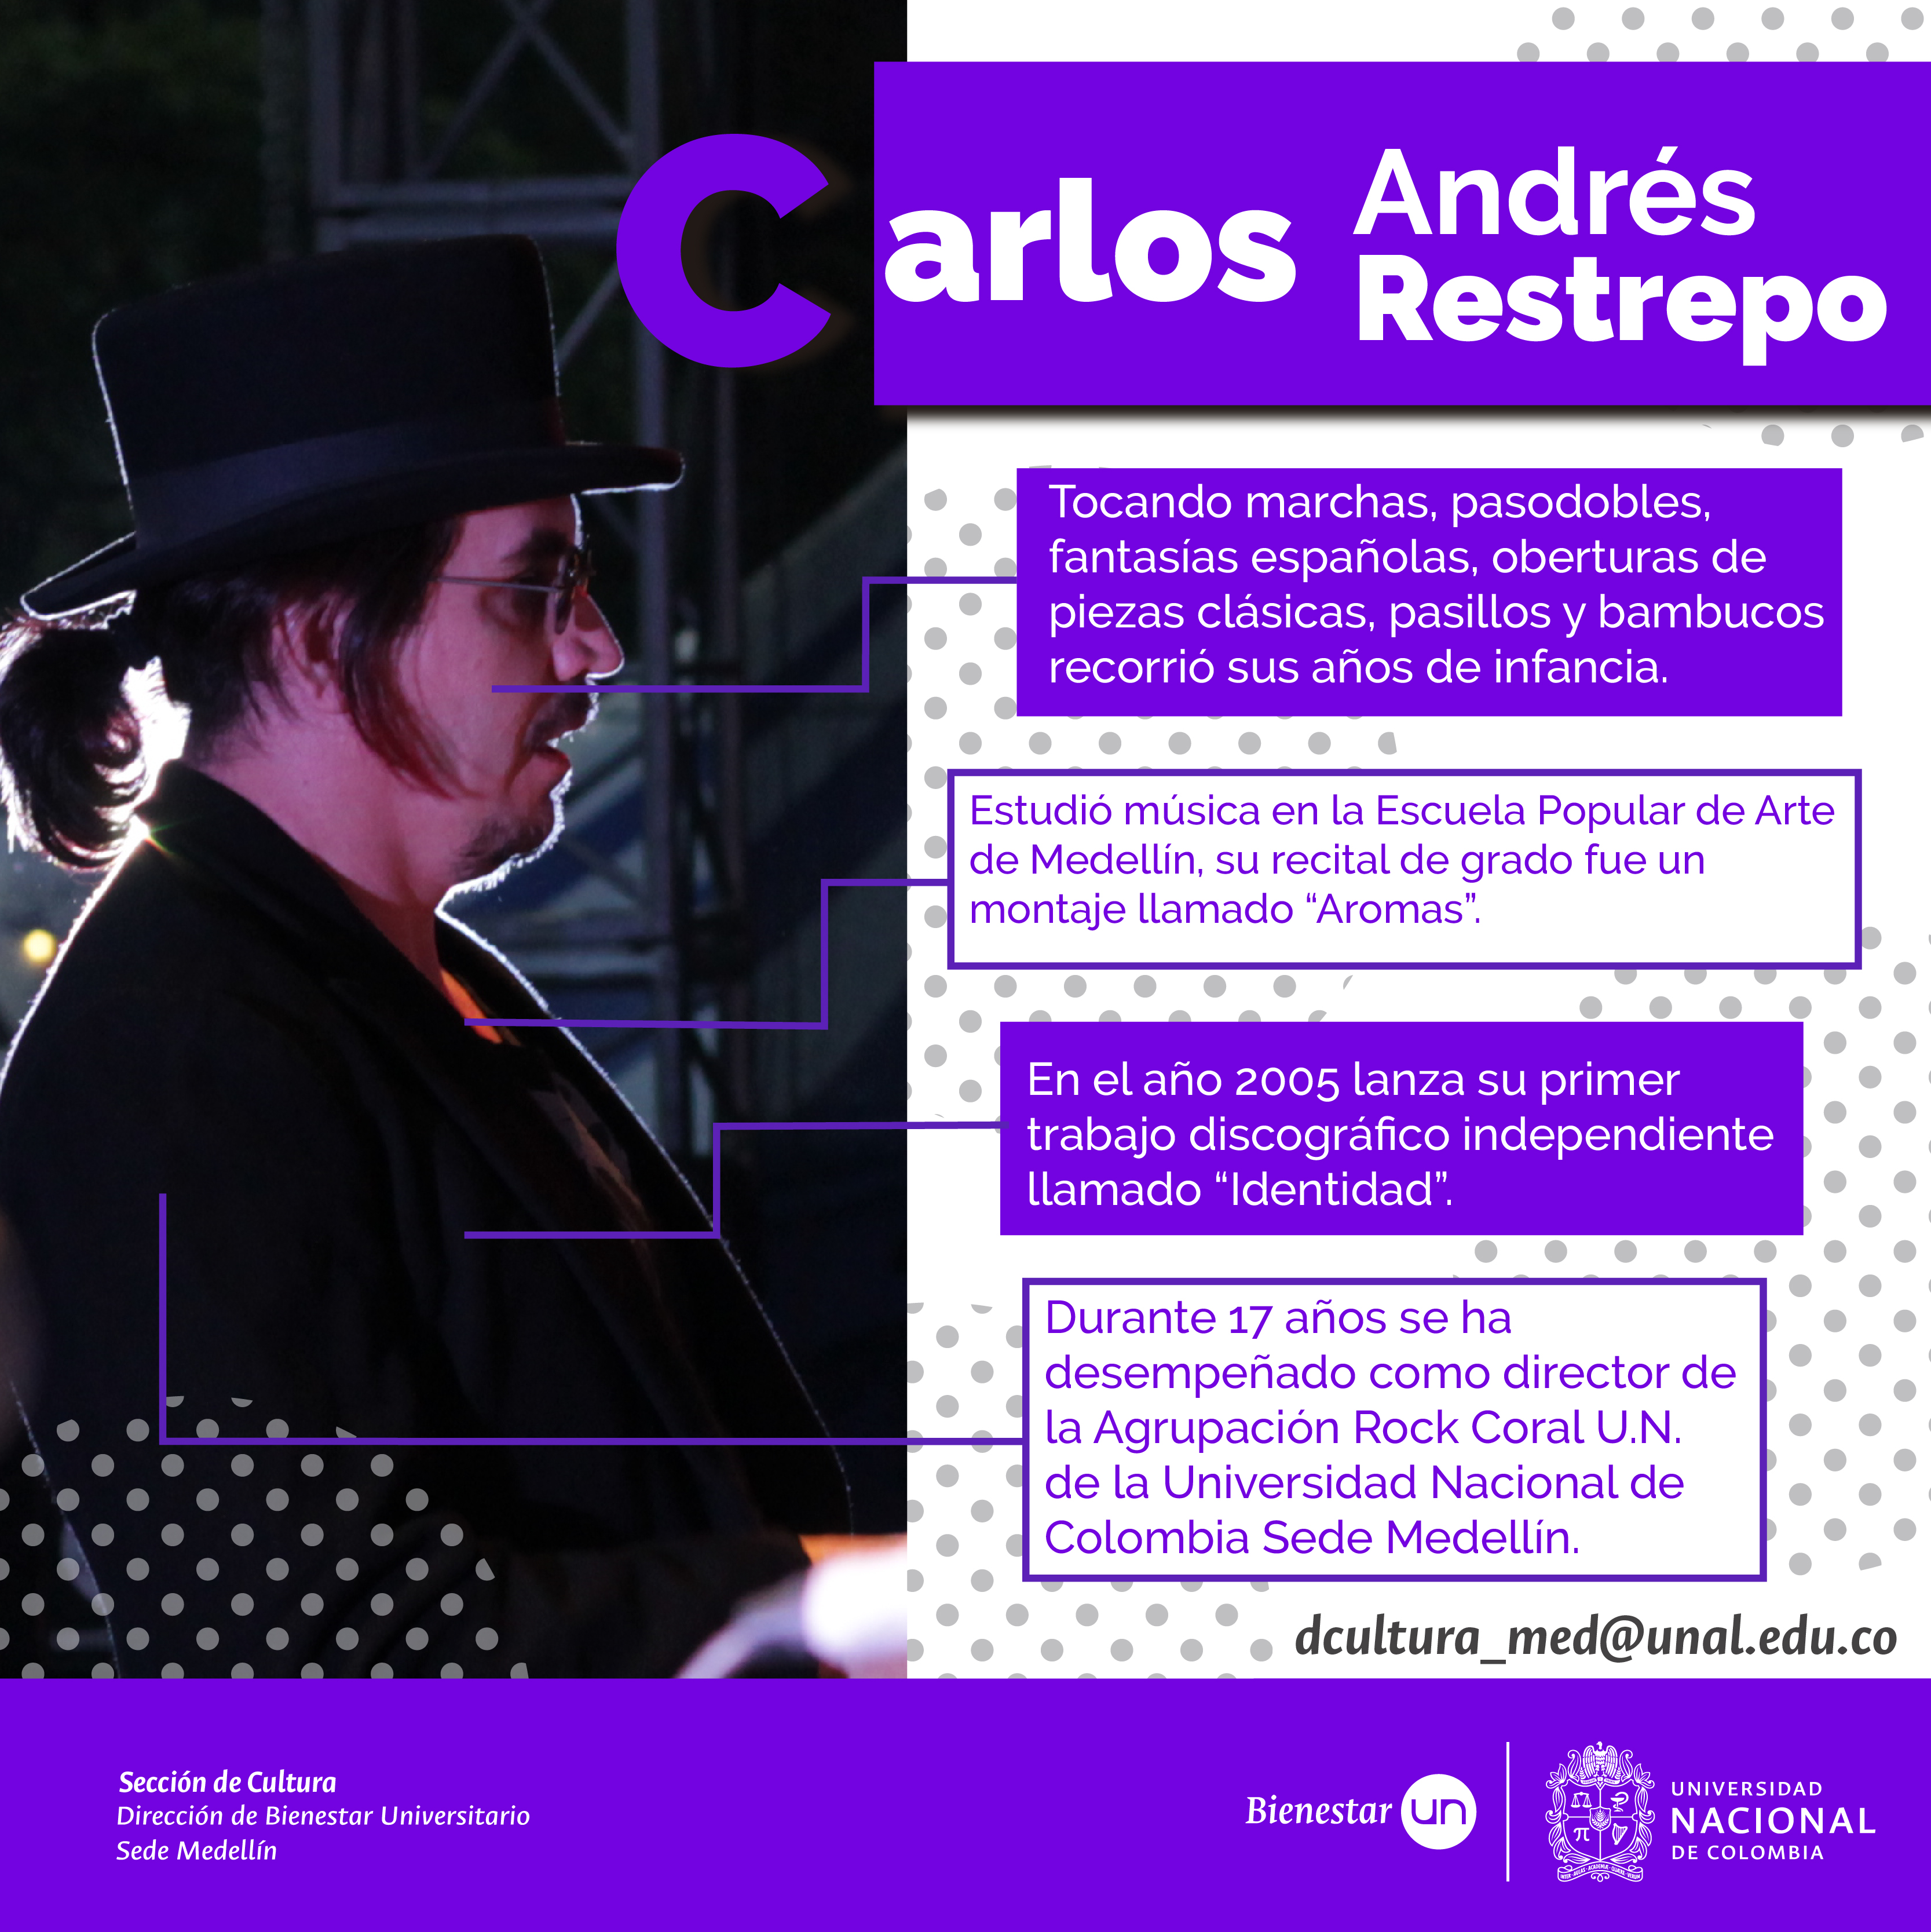 Carlos andres 06